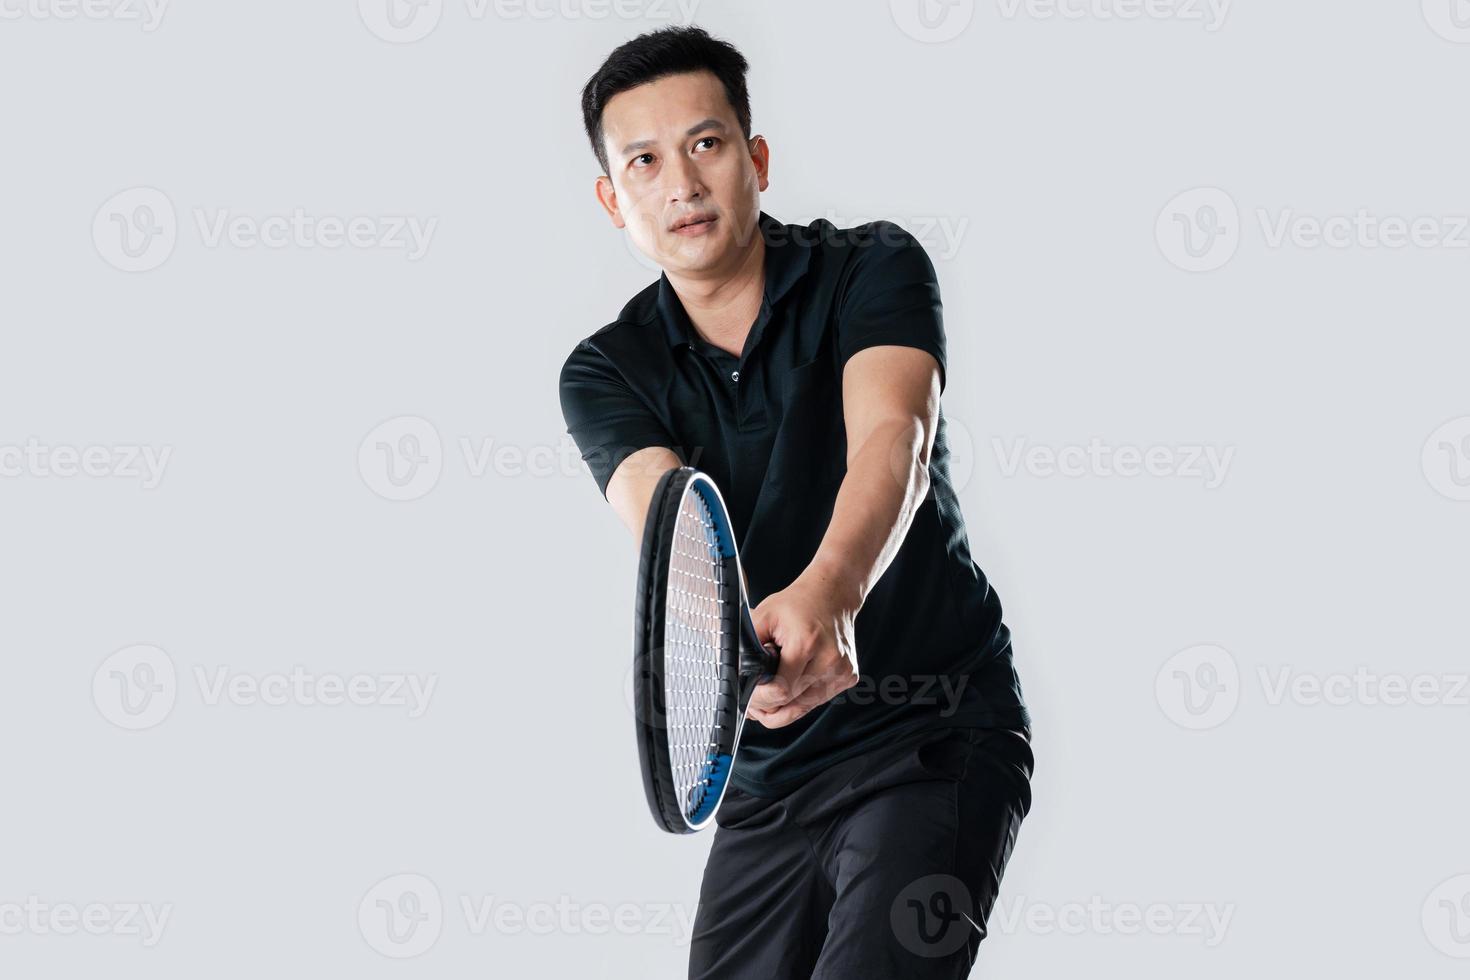 mannetje tennis speler spelen tennis met streven voor zege gebaar. foto